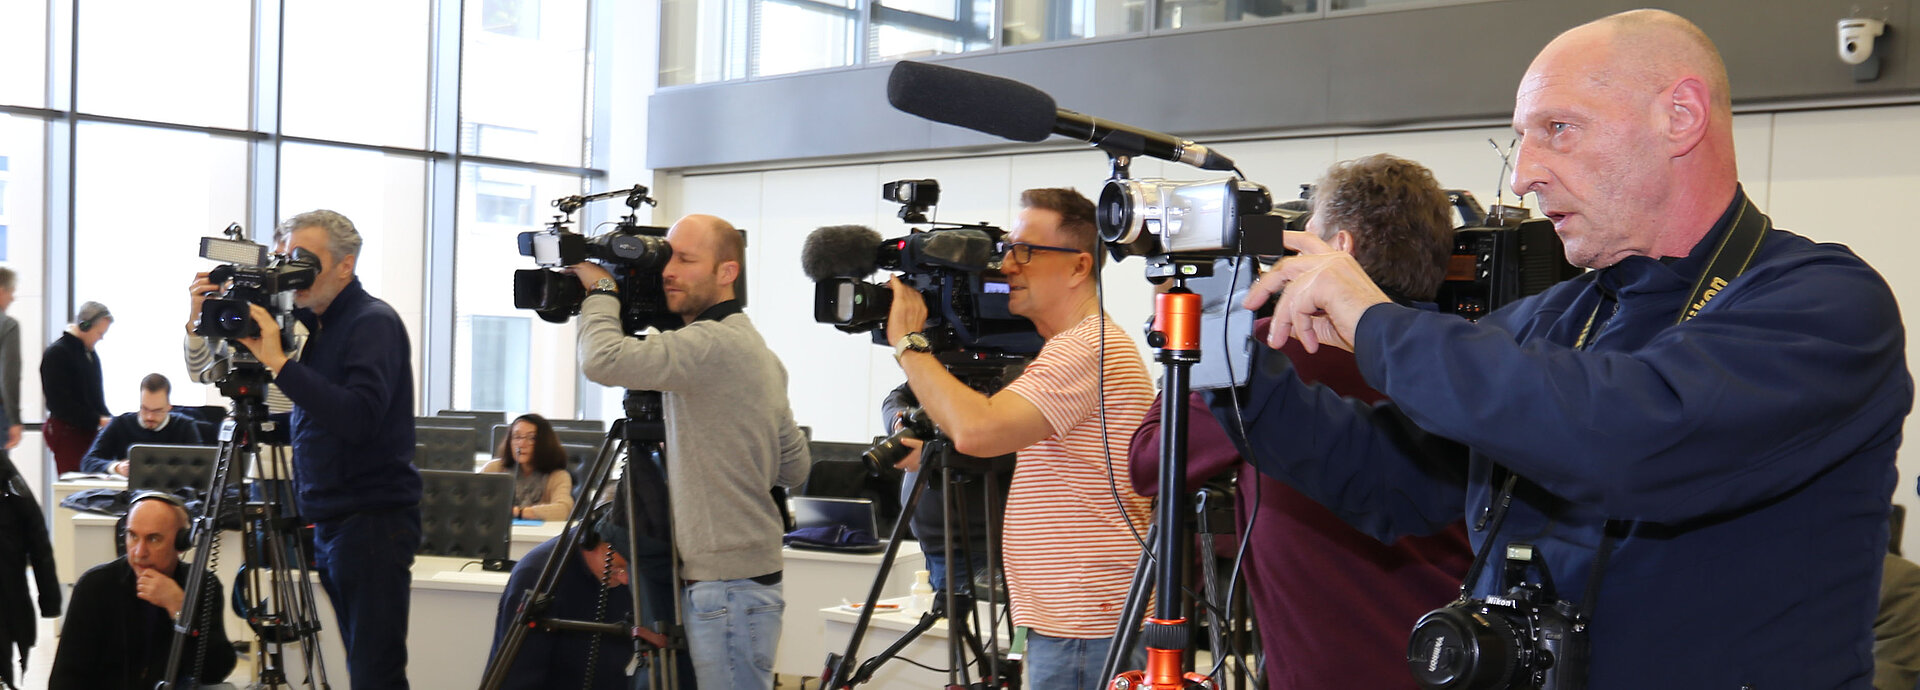 Journalisten mit Mikrofons und Kameras bei einer Pressekonferenz. 